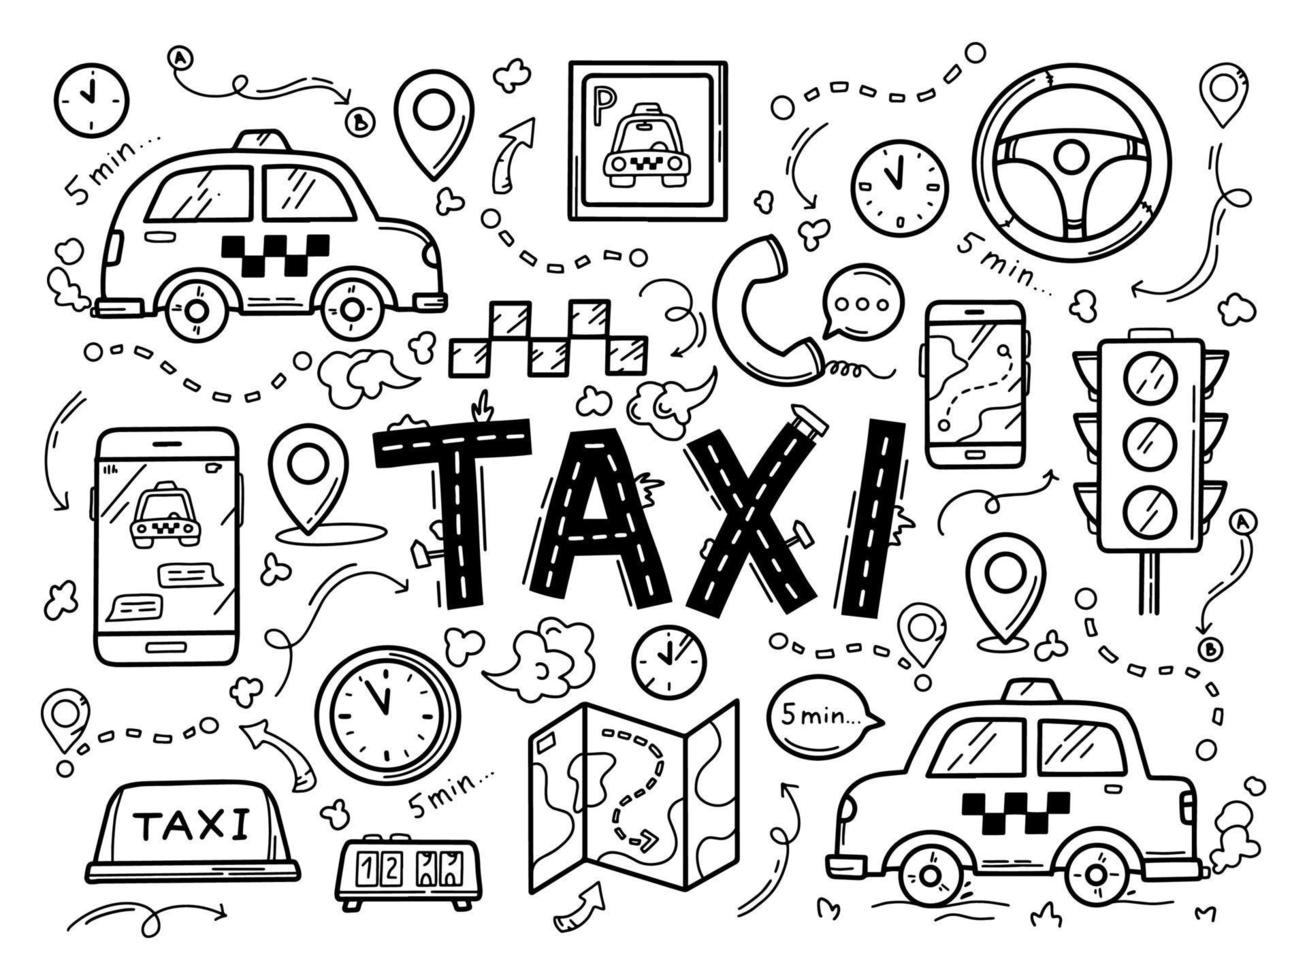 conjunto de ícones de táxi no estilo doodle desenhado à mão vetor